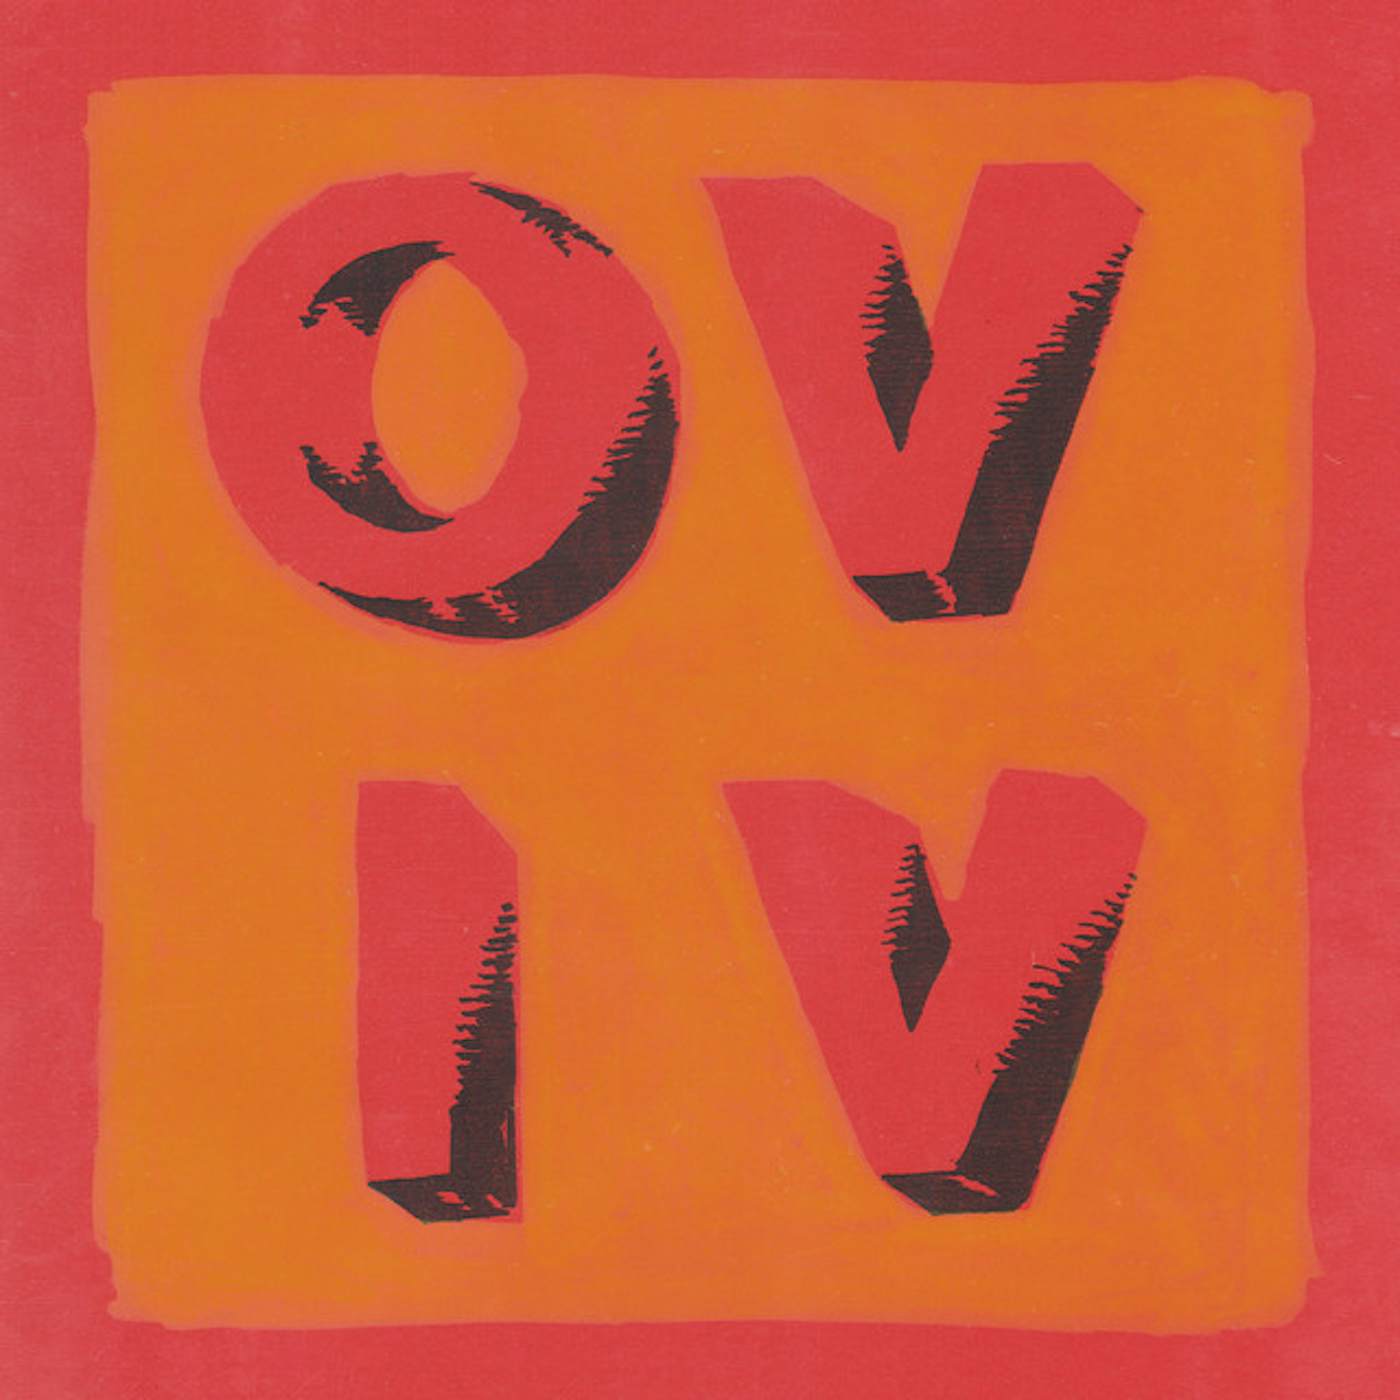 Onda Vaga OV IV Vinyl Record